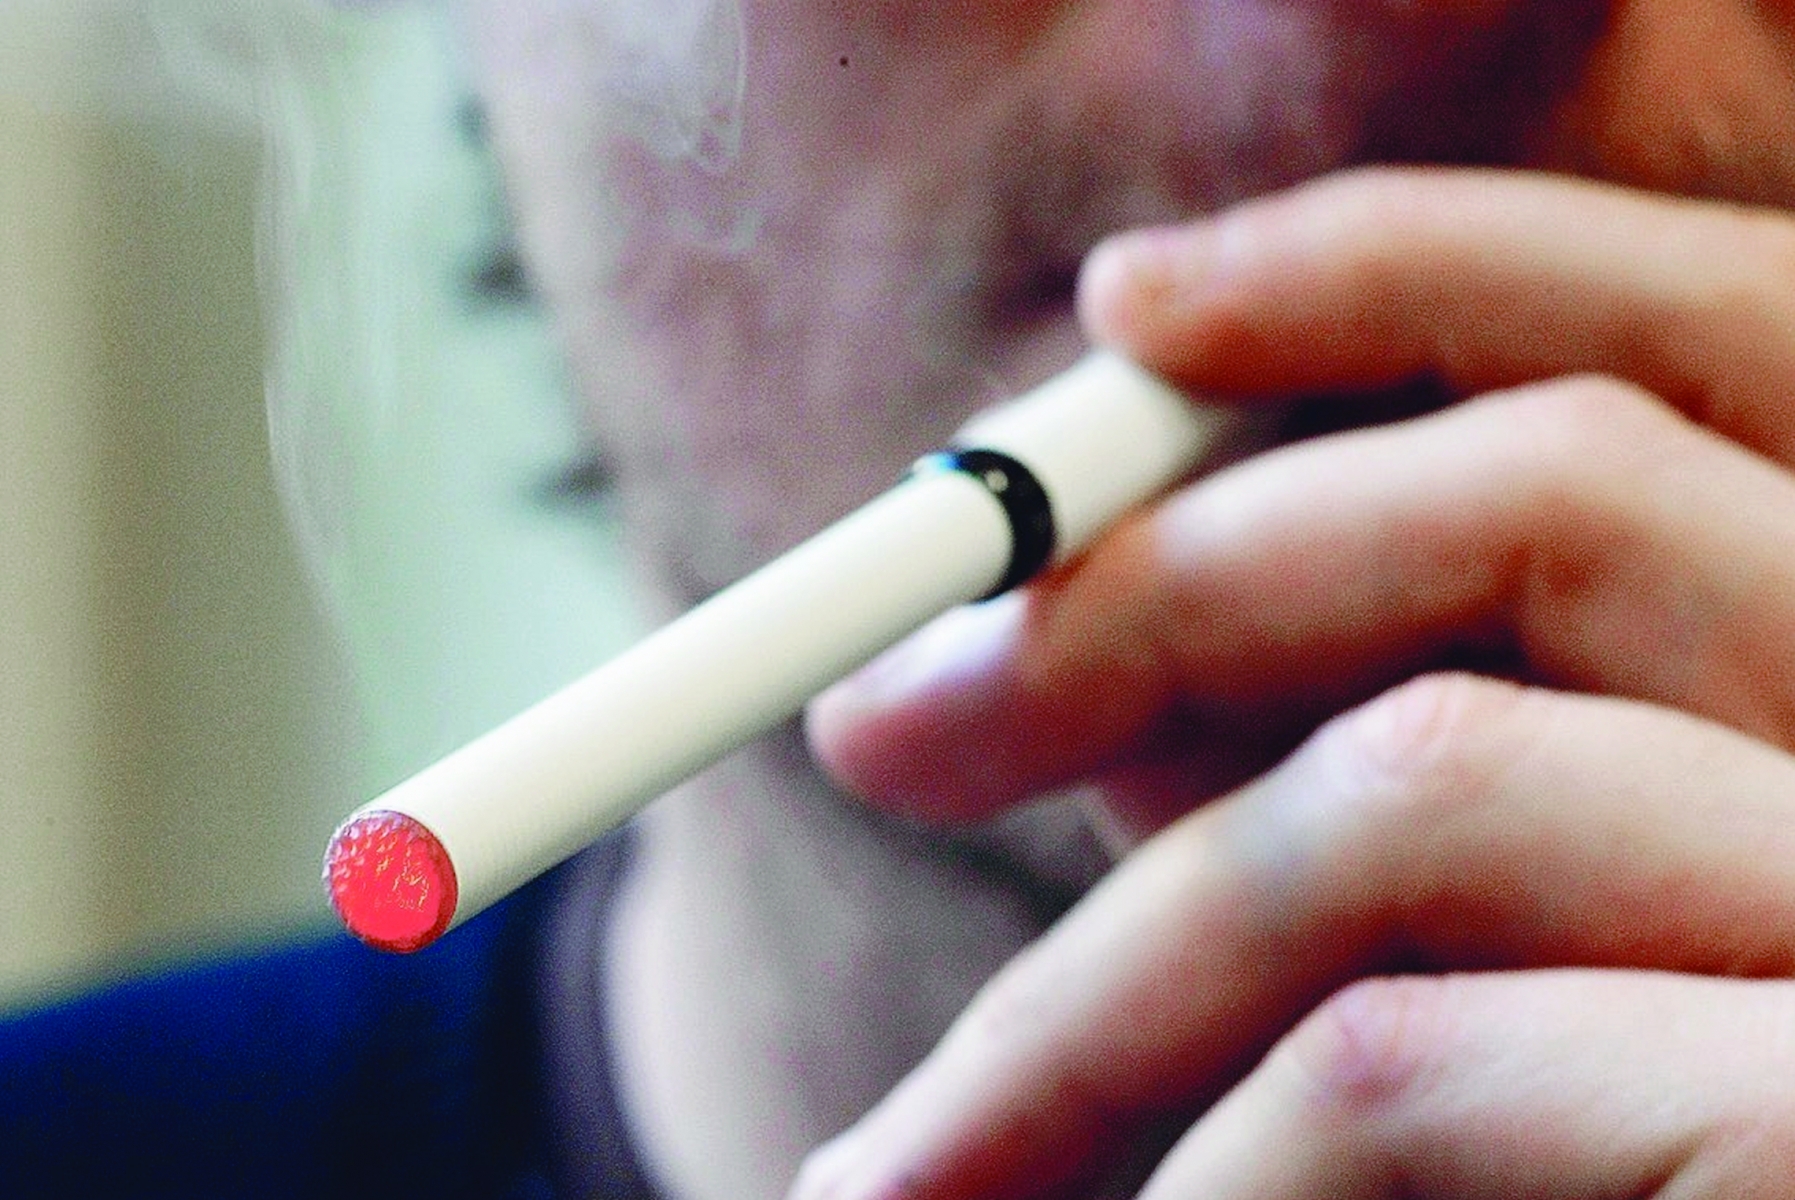 "Les autorités ne protègent personne en interdisant l'accès à un moyen de réduction des risques alors que le tabagisme concerne 25% de la population", argumente Helvetic Vape.